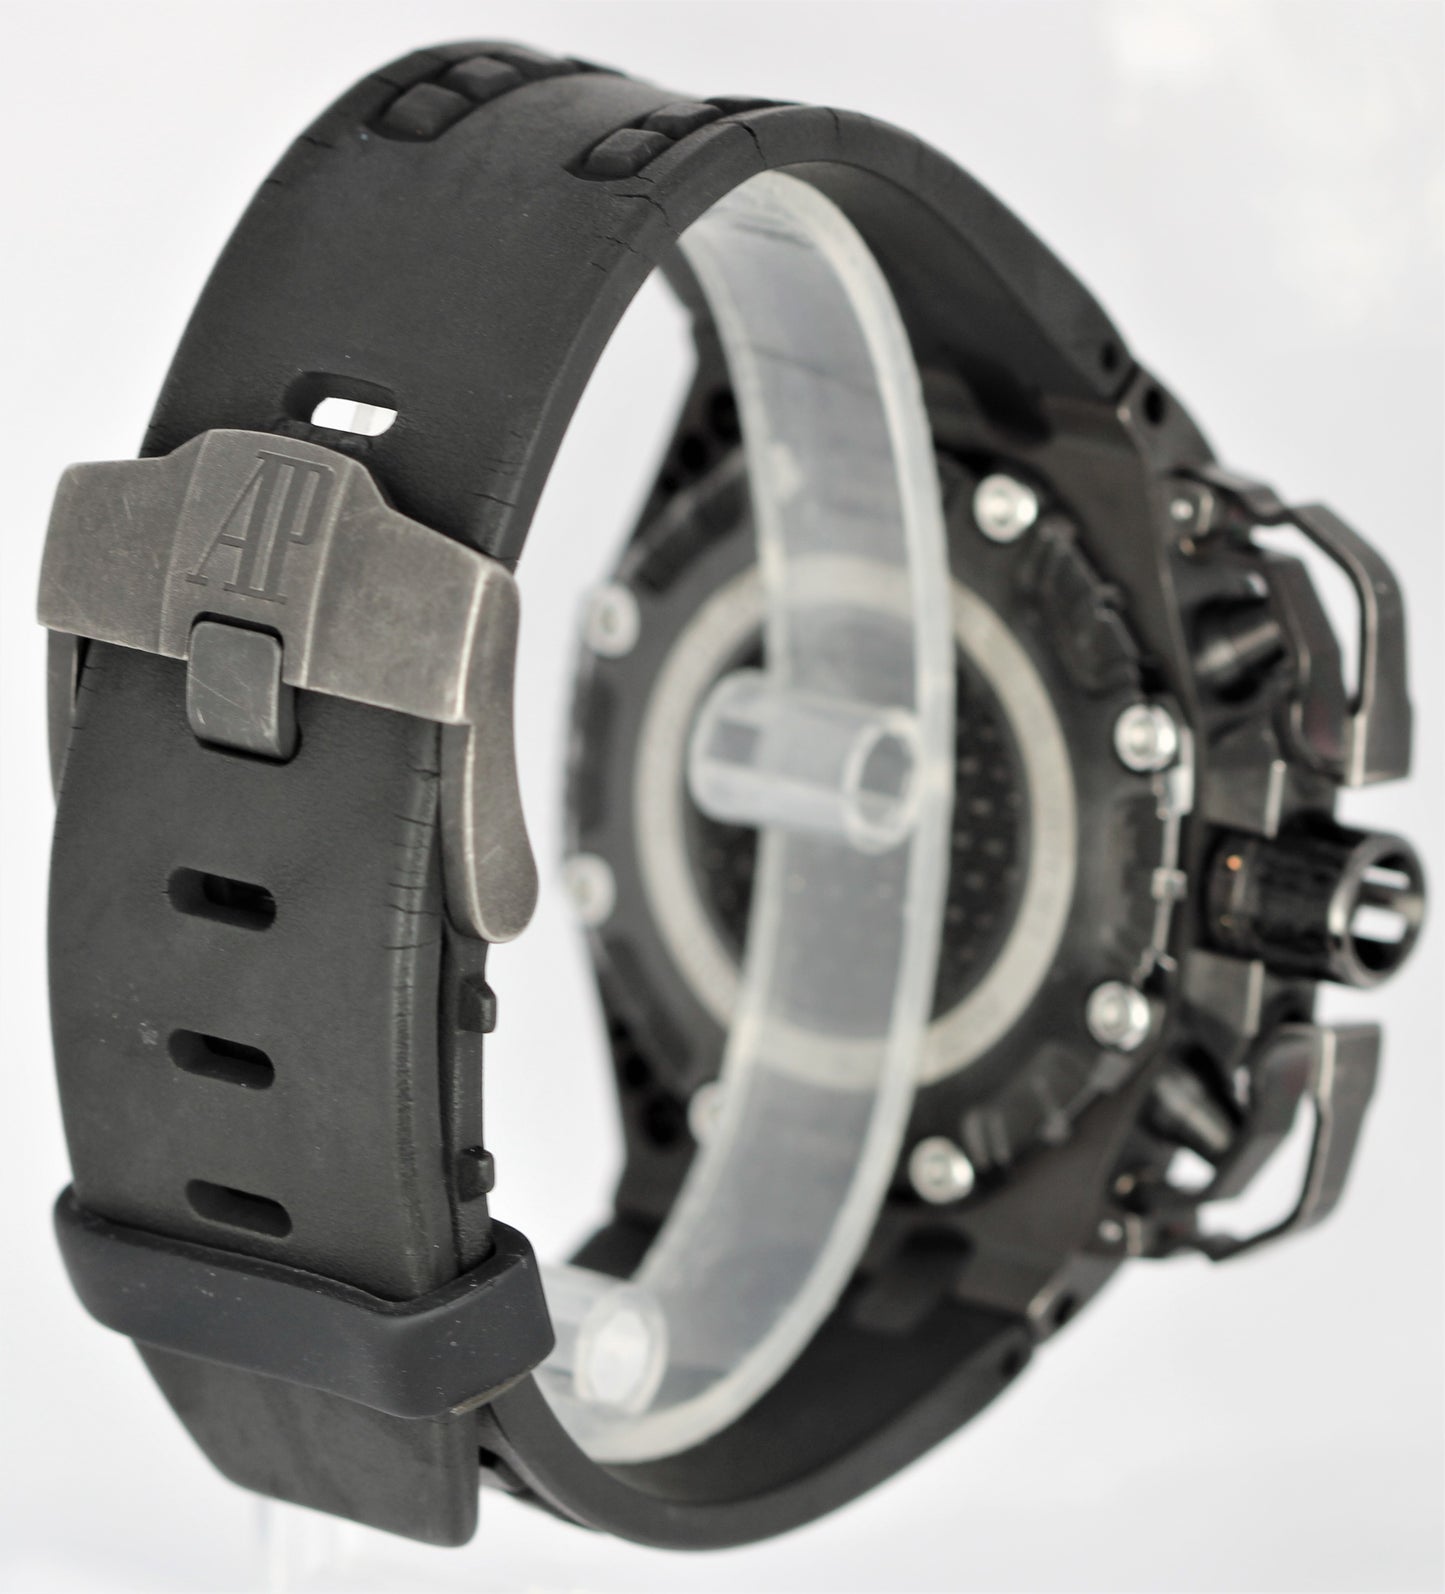 Audemars Piguet Royal Oak Offshore Survivor Titanium Black 42mm 26165IO Watch